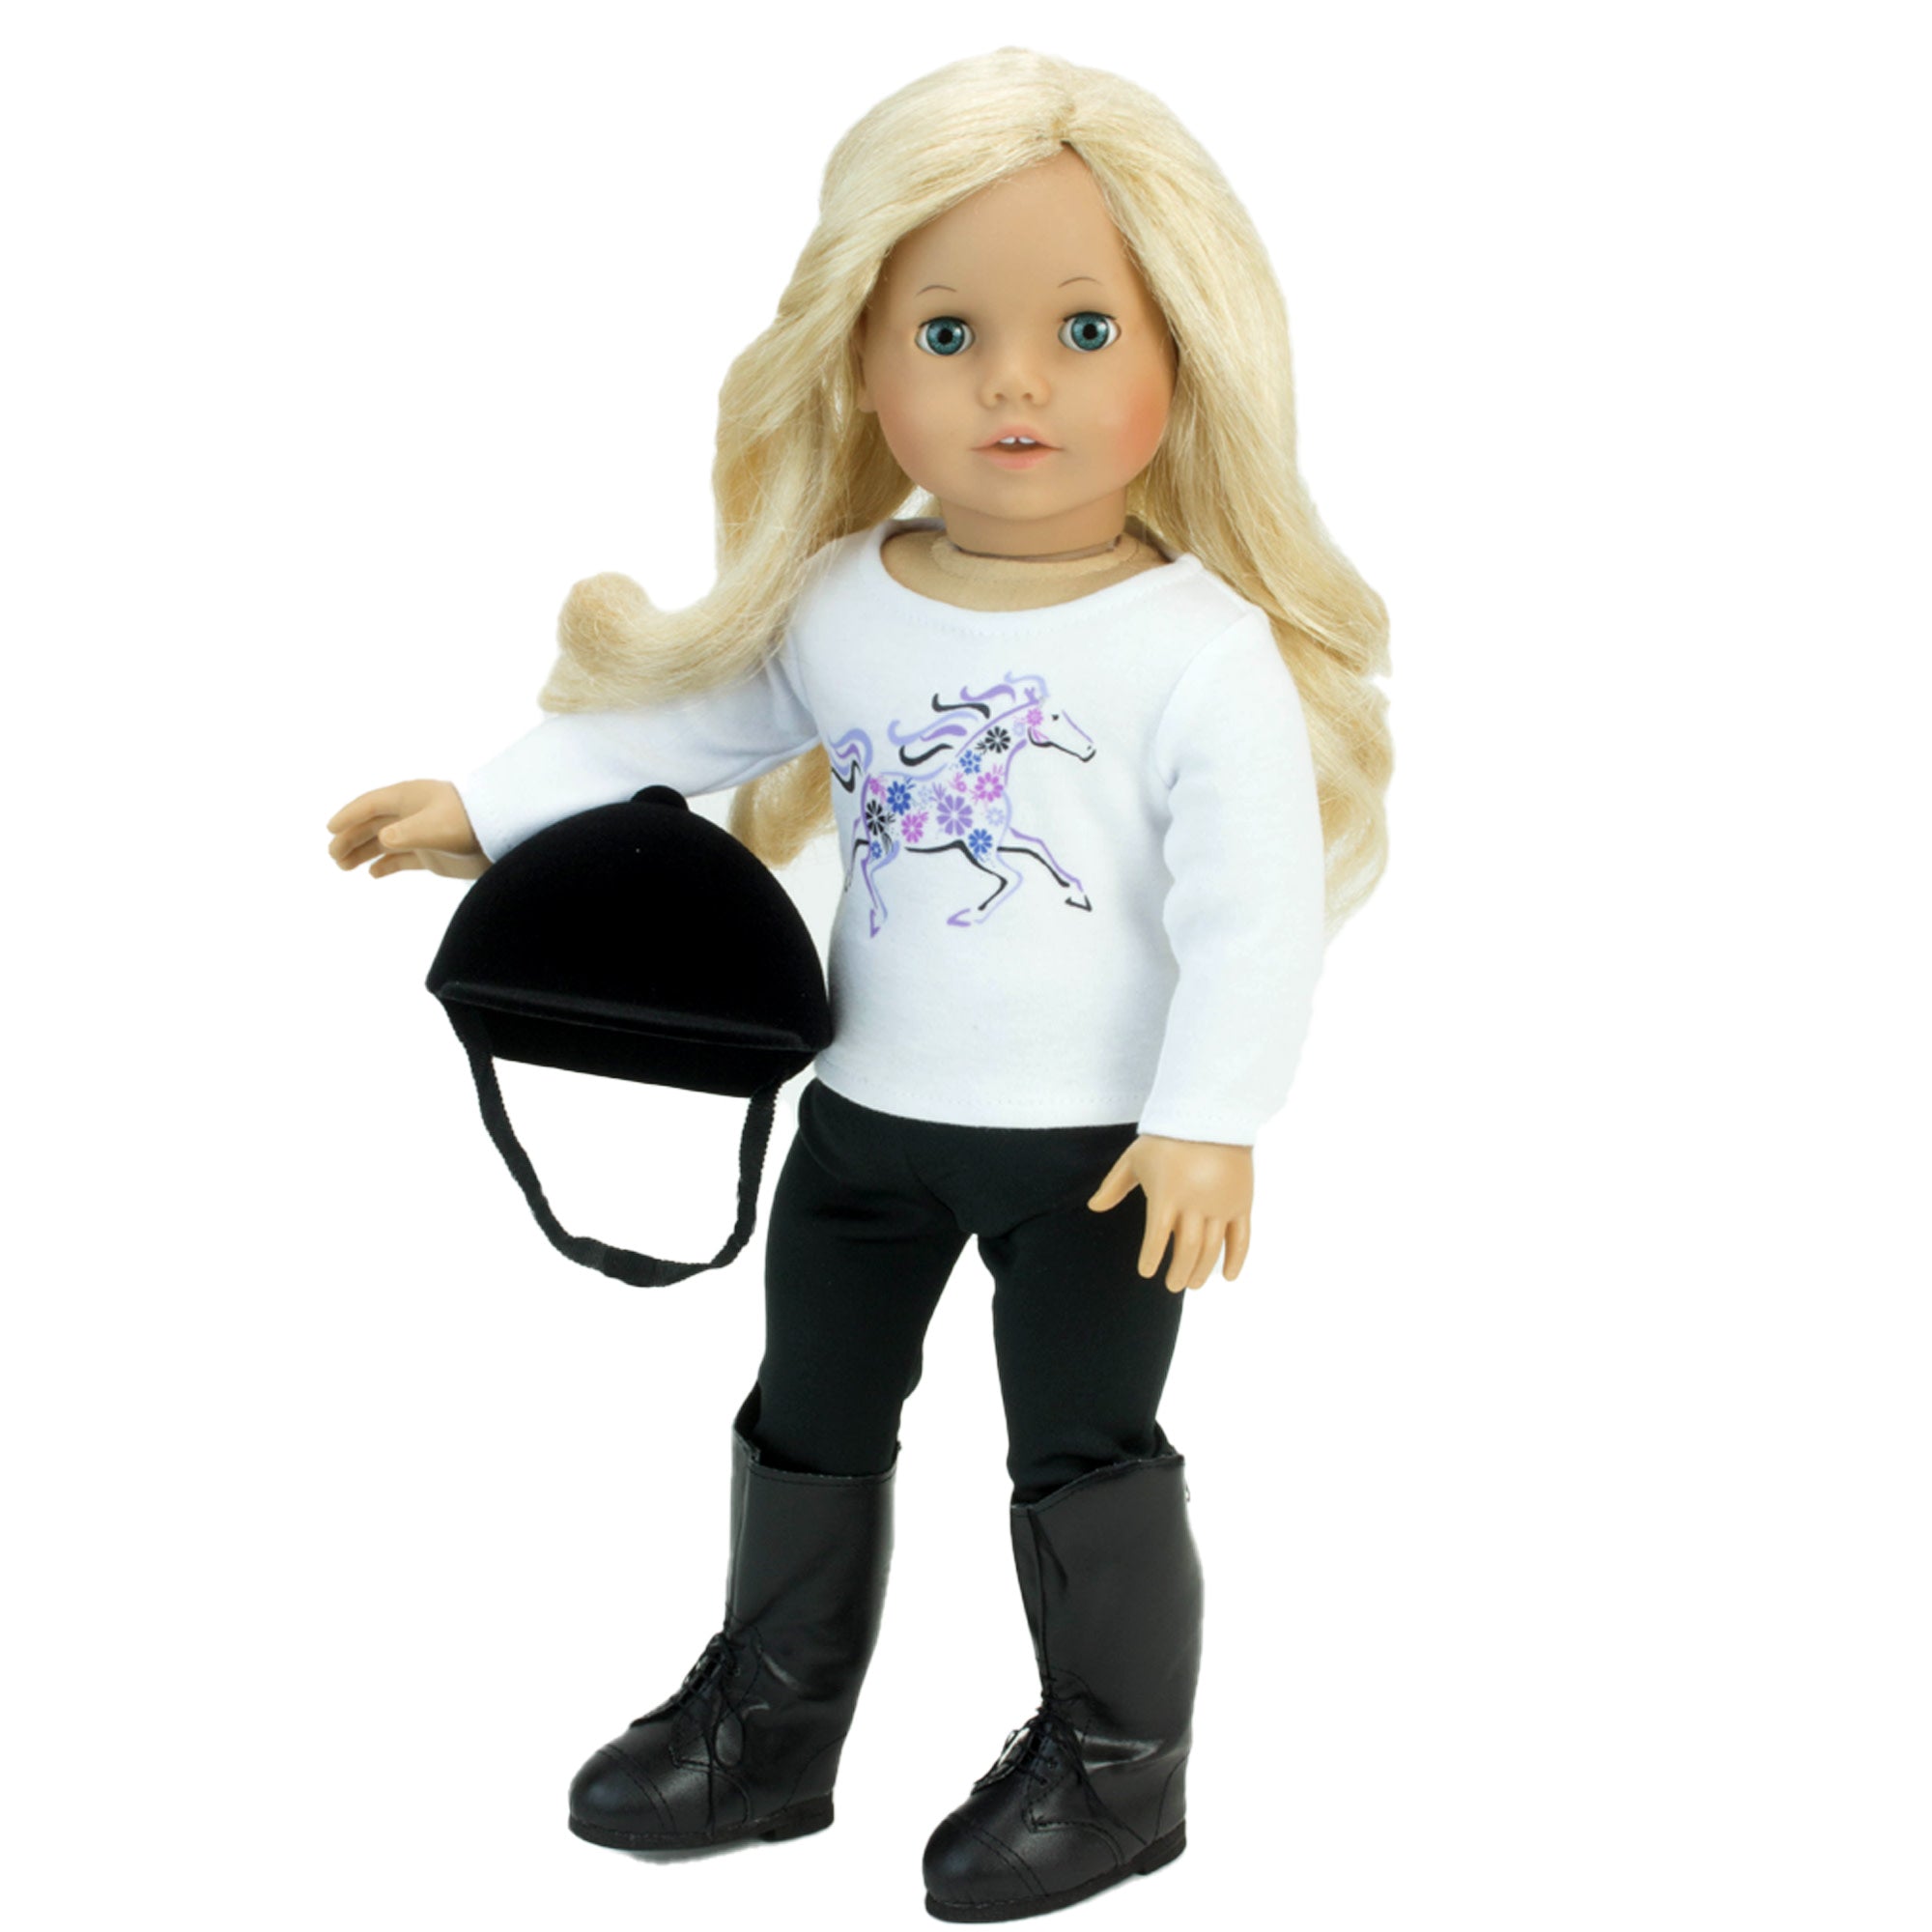 Sophia's - 18" Doll - Velvet Riding Helmet - Black